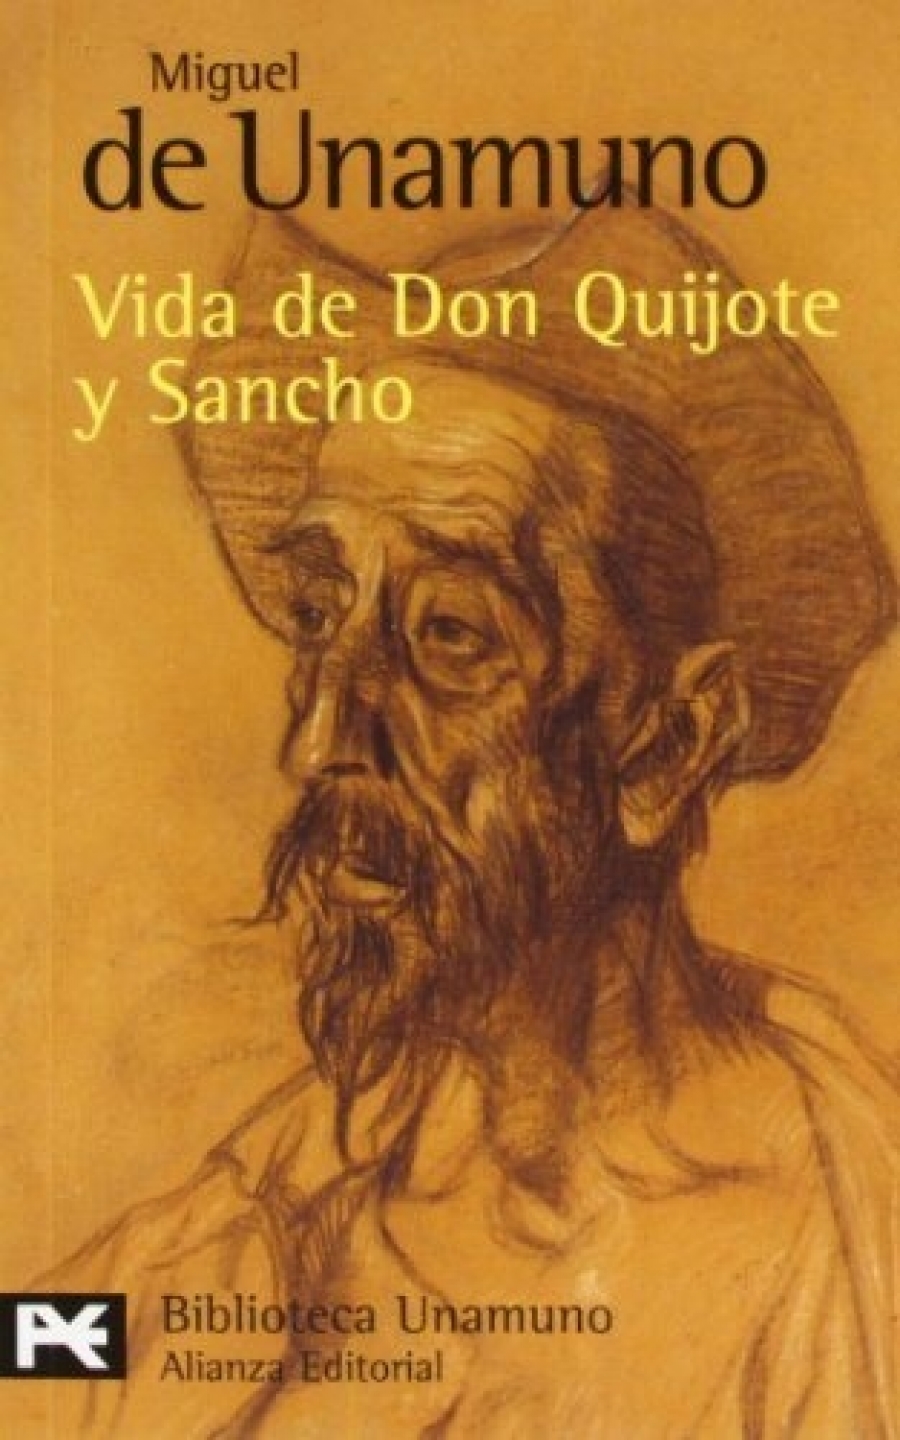 Unamuno, Miguel de Vida de Don Quijote y Sancho 